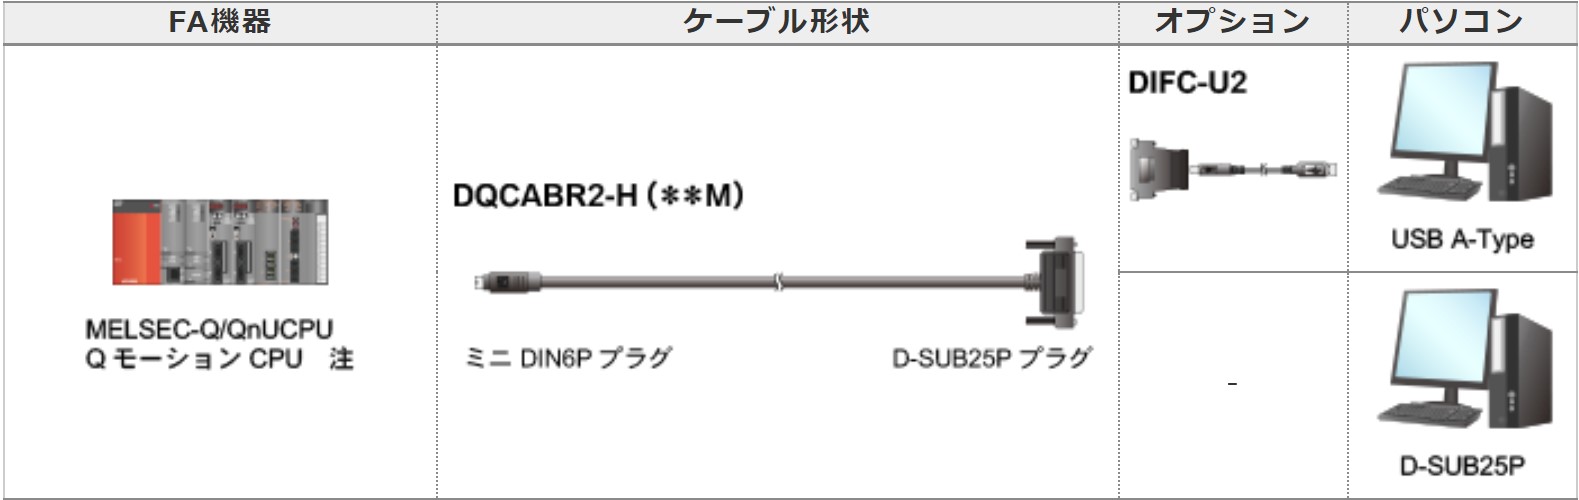 三菱シーケンサ対応インタフェースコンバータケーブル DIFC-U2 - サプライ